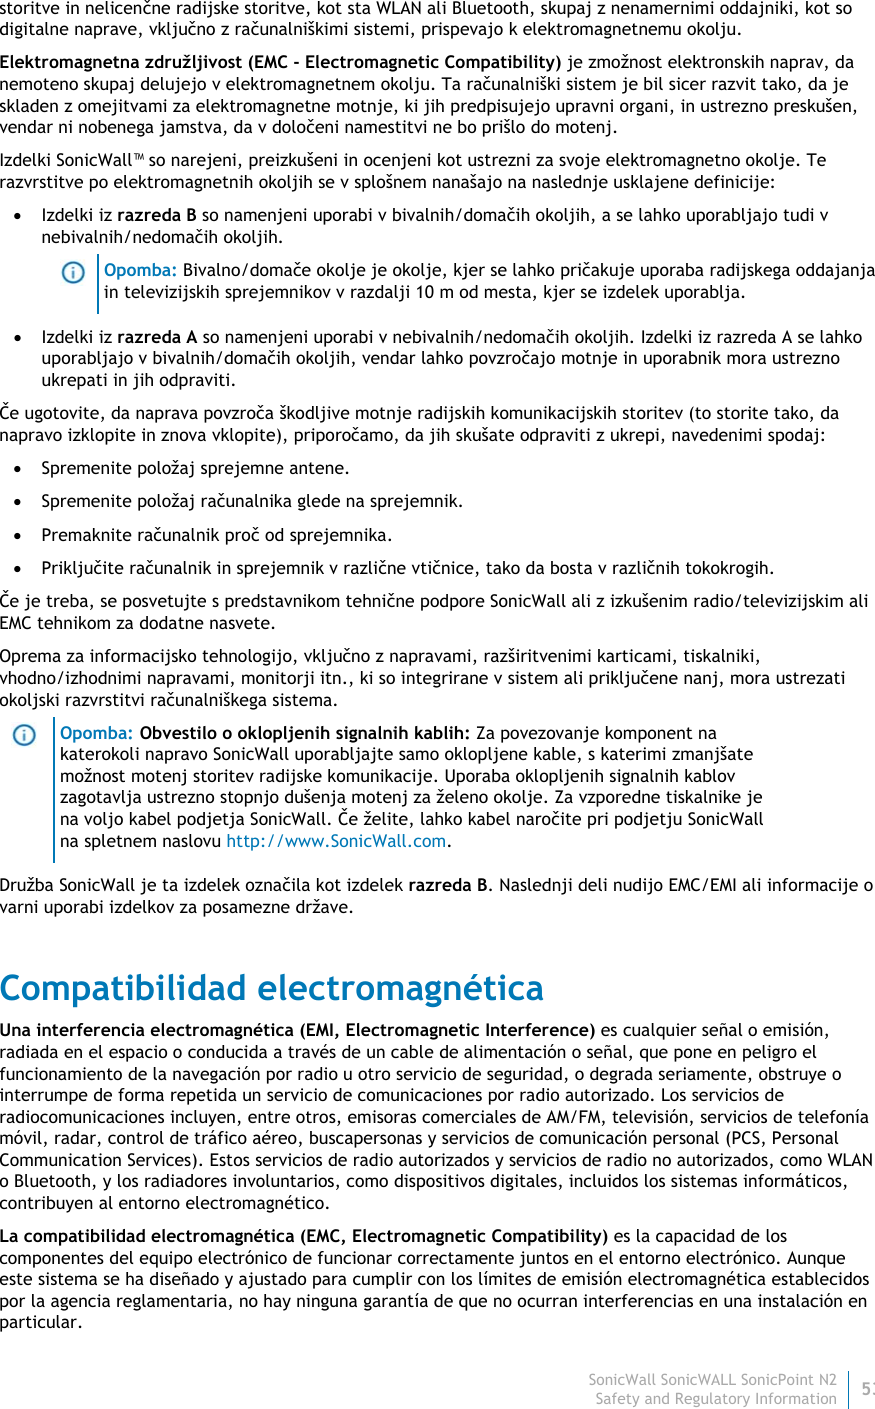 SonicWall SonicWALL SonicPoint N253 Safety and Regulatory Information storitve in nelicenčne radijske storitve, kot sta WLAN ali Bluetooth, skupaj z nenamernimi oddajniki, kot so digitalne naprave, vključno z računalniškimi sistemi, prispevajo k elektromagnetnemu okolju. Elektromagnetna združljivost (EMC - Electromagnetic Compatibility) je zmožnost elektronskih naprav, da nemoteno skupaj delujejo v elektromagnetnem okolju. Ta računalniški sistem je bil sicer razvit tako, da je skladen z omejitvami za elektromagnetne motnje, ki jih predpisujejo upravni organi, in ustrezno preskušen, vendar ni nobenega jamstva, da v določeni namestitvi ne bo prišlo do motenj.  Izdelki SonicWall™ so narejeni, preizkušeni in ocenjeni kot ustrezni za svoje elektromagnetno okolje. Te razvrstitve po elektromagnetnih okoljih se v splošnem nanašajo na naslednje usklajene definicije:  Izdelki iz razreda B so namenjeni uporabi v bivalnih/domačih okoljih, a se lahko uporabljajo tudi v nebivalnih/nedomačih okoljih.  Opomba: Bivalno/domače okolje je okolje, kjer se lahko pričakuje uporaba radijskega oddajanja in televizijskih sprejemnikov v razdalji 10 m od mesta, kjer se izdelek uporablja.  Izdelki iz razreda A so namenjeni uporabi v nebivalnih/nedomačih okoljih. Izdelki iz razreda A se lahko uporabljajo v bivalnih/domačih okoljih, vendar lahko povzročajo motnje in uporabnik mora ustrezno ukrepati in jih odpraviti. Če ugotovite, da naprava povzroča škodljive motnje radijskih komunikacijskih storitev (to storite tako, da napravo izklopite in znova vklopite), priporočamo, da jih skušate odpraviti z ukrepi, navedenimi spodaj:  Spremenite položaj sprejemne antene.  Spremenite položaj računalnika glede na sprejemnik.  Premaknite računalnik proč od sprejemnika.  Priključite računalnik in sprejemnik v različne vtičnice, tako da bosta v različnih tokokrogih. Če je treba, se posvetujte s predstavnikom tehnične podpore SonicWall ali z izkušenim radio/televizijskim ali EMC tehnikom za dodatne nasvete. Oprema za informacijsko tehnologijo, vključno z napravami, razširitvenimi karticami, tiskalniki, vhodno/izhodnimi napravami, monitorji itn., ki so integrirane v sistem ali priključene nanj, mora ustrezati okoljski razvrstitvi računalniškega sistema.   Opomba: Obvestilo o oklopljenih signalnih kablih: Za povezovanje komponent na katerokoli napravo SonicWall uporabljajte samo oklopljene kable, s katerimi zmanjšate možnost motenj storitev radijske komunikacije. Uporaba oklopljenih signalnih kablov zagotavlja ustrezno stopnjo dušenja motenj za želeno okolje. Za vzporedne tiskalnike je na voljo kabel podjetja SonicWall. Če želite, lahko kabel naročite pri podjetju SonicWall na spletnem naslovu http://www.SonicWall.com. Družba SonicWall je ta izdelek označila kot izdelek razreda B. Naslednji deli nudijo EMC/EMI ali informacije o varni uporabi izdelkov za posamezne države. Compatibilidad electromagnética Una interferencia electromagnética (EMI, Electromagnetic Interference) es cualquier señal o emisión, radiada en el espacio o conducida a través de un cable de alimentación o señal, que pone en peligro el funcionamiento de la navegación por radio u otro servicio de seguridad, o degrada seriamente, obstruye o interrumpe de forma repetida un servicio de comunicaciones por radio autorizado. Los servicios de radiocomunicaciones incluyen, entre otros, emisoras comerciales de AM/FM, televisión, servicios de telefonía móvil, radar, control de tráfico aéreo, buscapersonas y servicios de comunicación personal (PCS, Personal Communication Services). Estos servicios de radio autorizados y servicios de radio no autorizados, como WLAN o Bluetooth, y los radiadores involuntarios, como dispositivos digitales, incluidos los sistemas informáticos, contribuyen al entorno electromagnético. La compatibilidad electromagnética (EMC, Electromagnetic Compatibility) es la capacidad de los componentes del equipo electrónico de funcionar correctamente juntos en el entorno electrónico. Aunque este sistema se ha diseñado y ajustado para cumplir con los límites de emisión electromagnética establecidos por la agencia reglamentaria, no hay ninguna garantía de que no ocurran interferencias en una instalación en particular.  